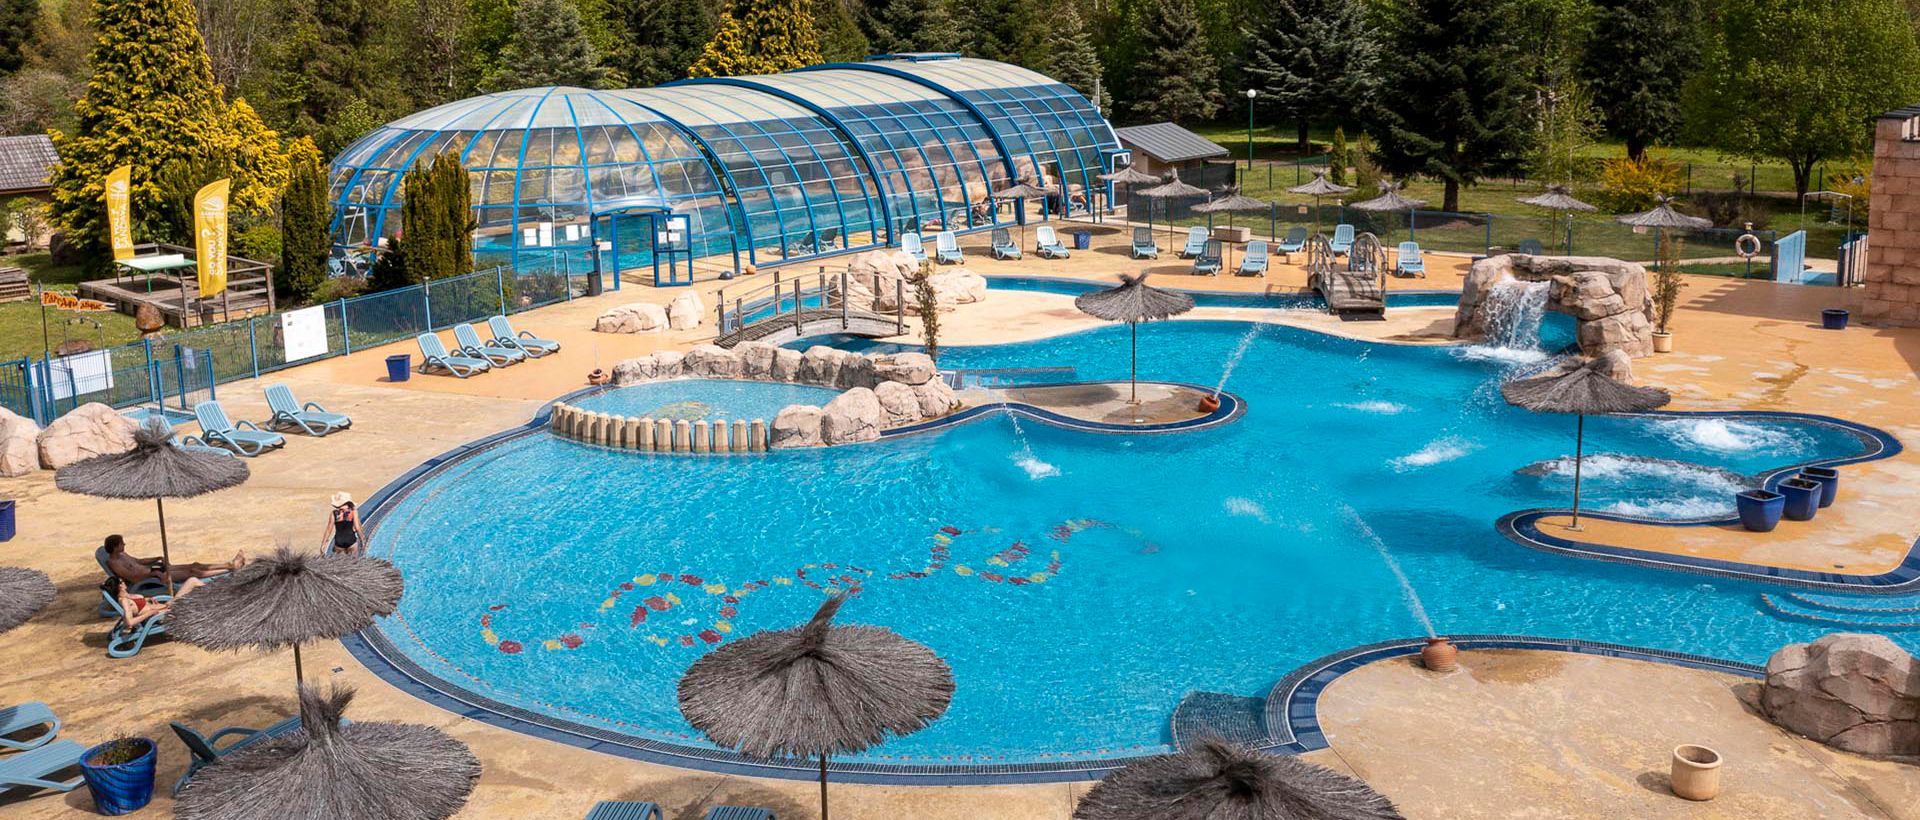 Découvrez le parc aquatique en Auvergne en famille !